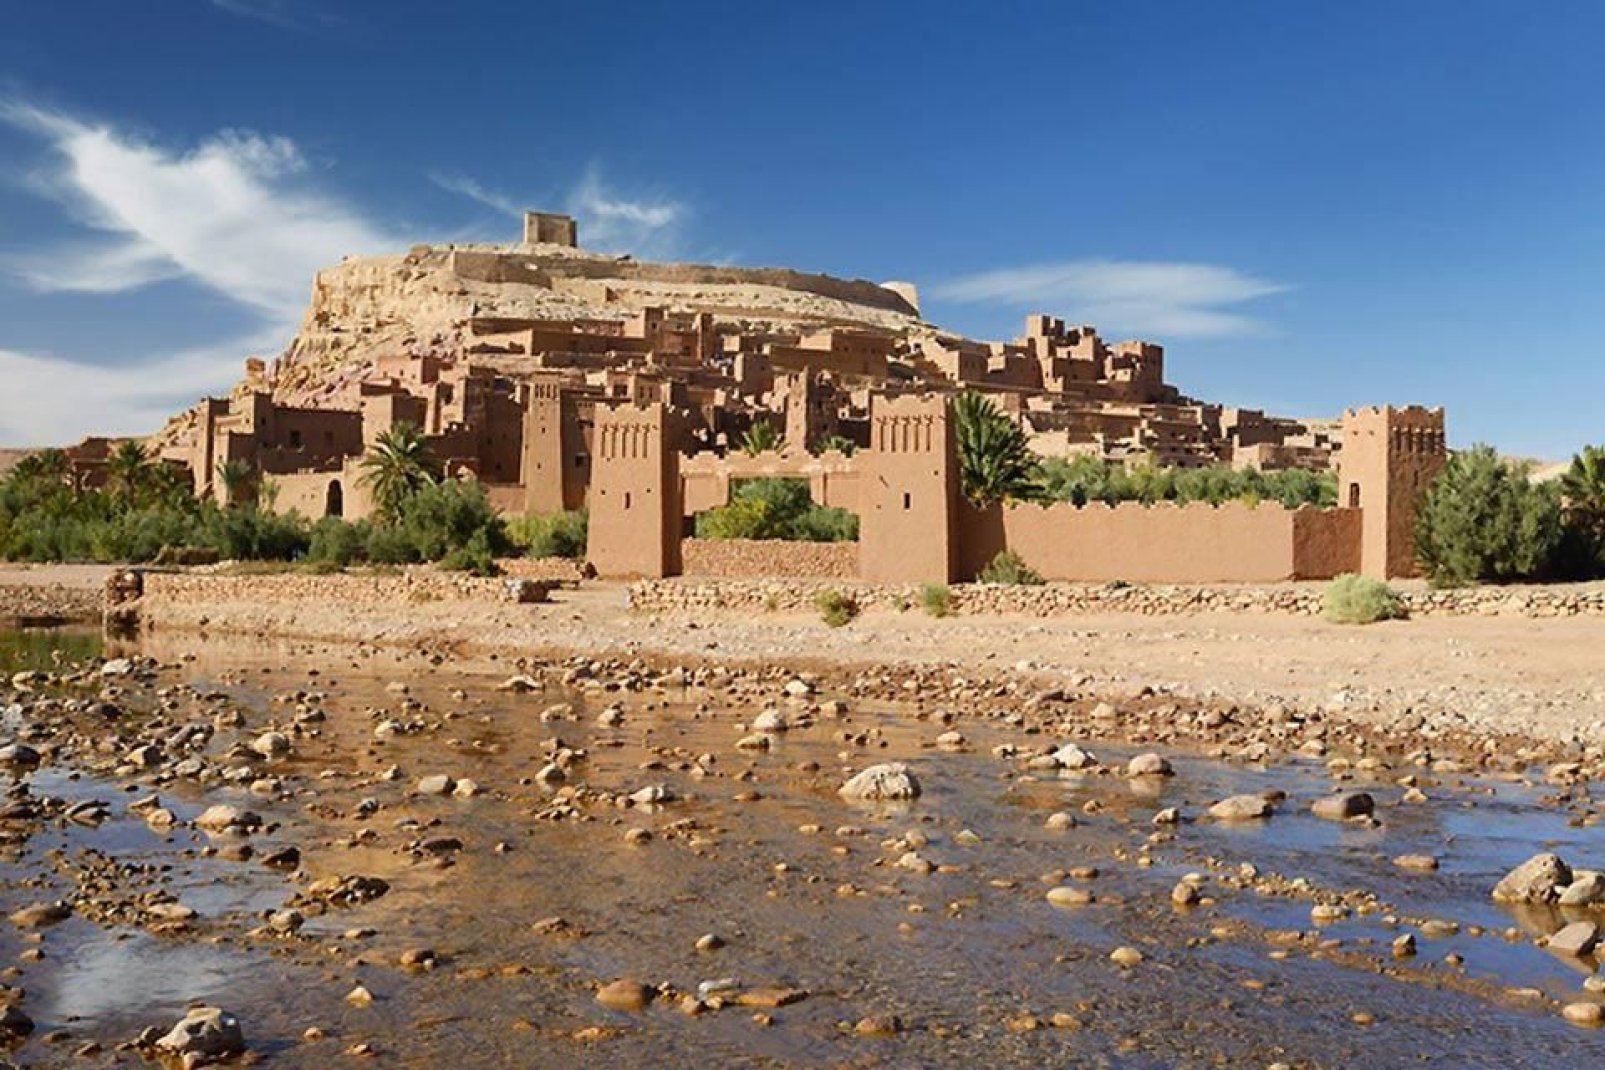 Ouarzazate, ciudad de parada antes del desierto, no tiene mucho interés. Los alrededores valen la pena.